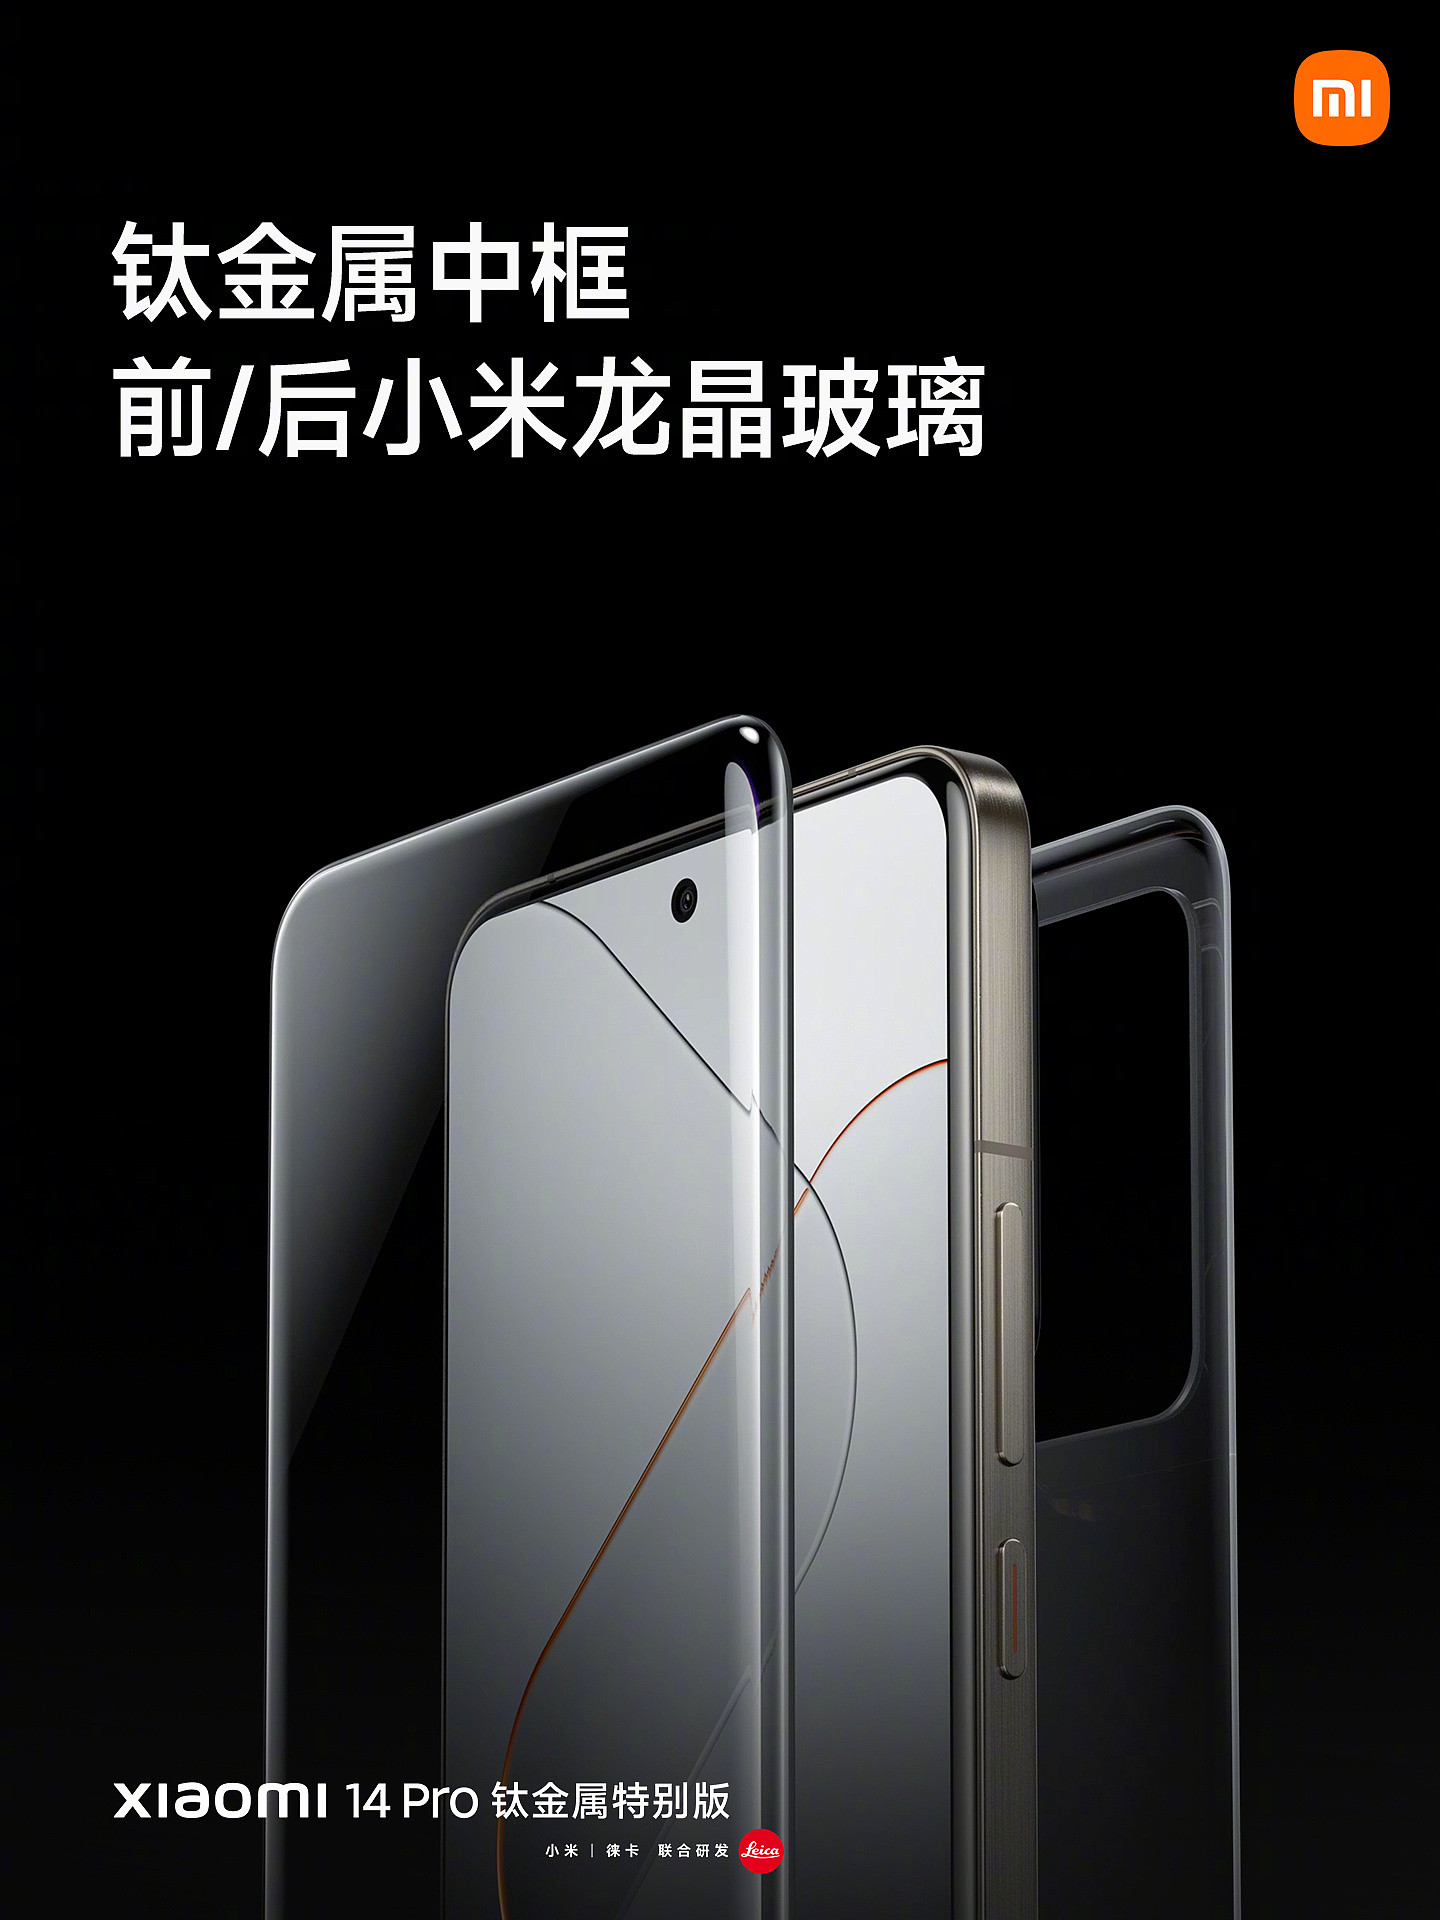 6499 元！小米 14 Pro 钛金属特别版手机发布，跟进苹果 iPhone 15 Pro - 6